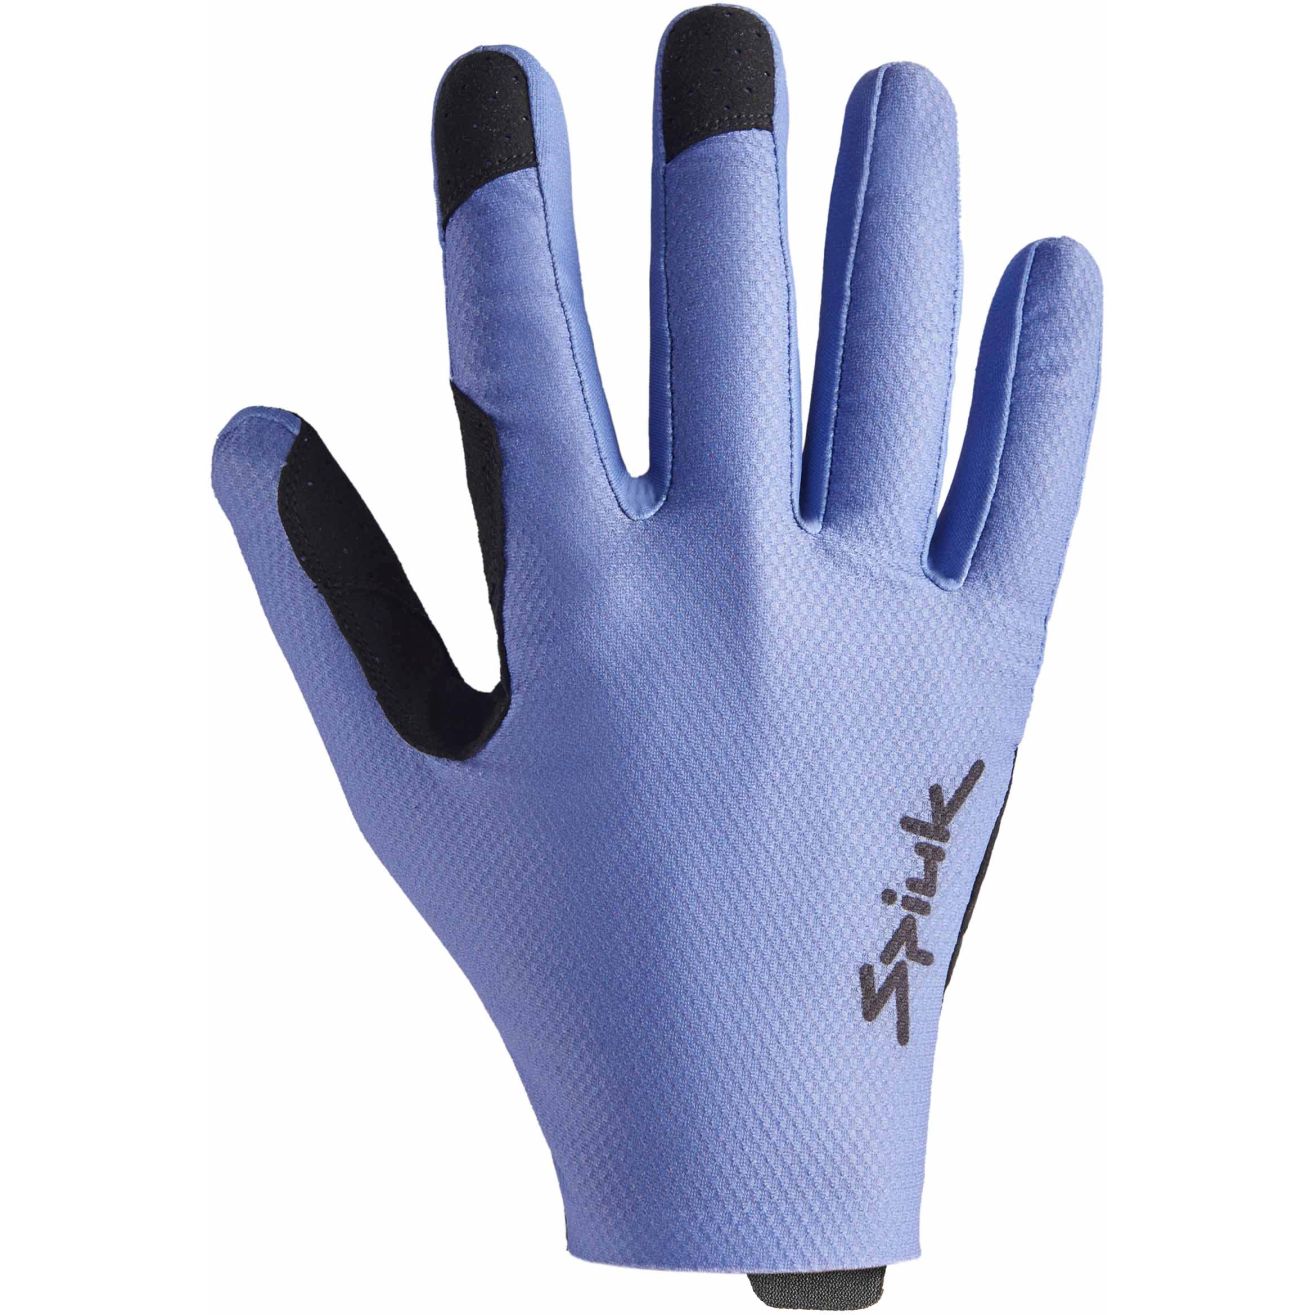 Produktbild von Spiuk ALL TERRAIN Gravel Vollfinger-Handschuhe - blau